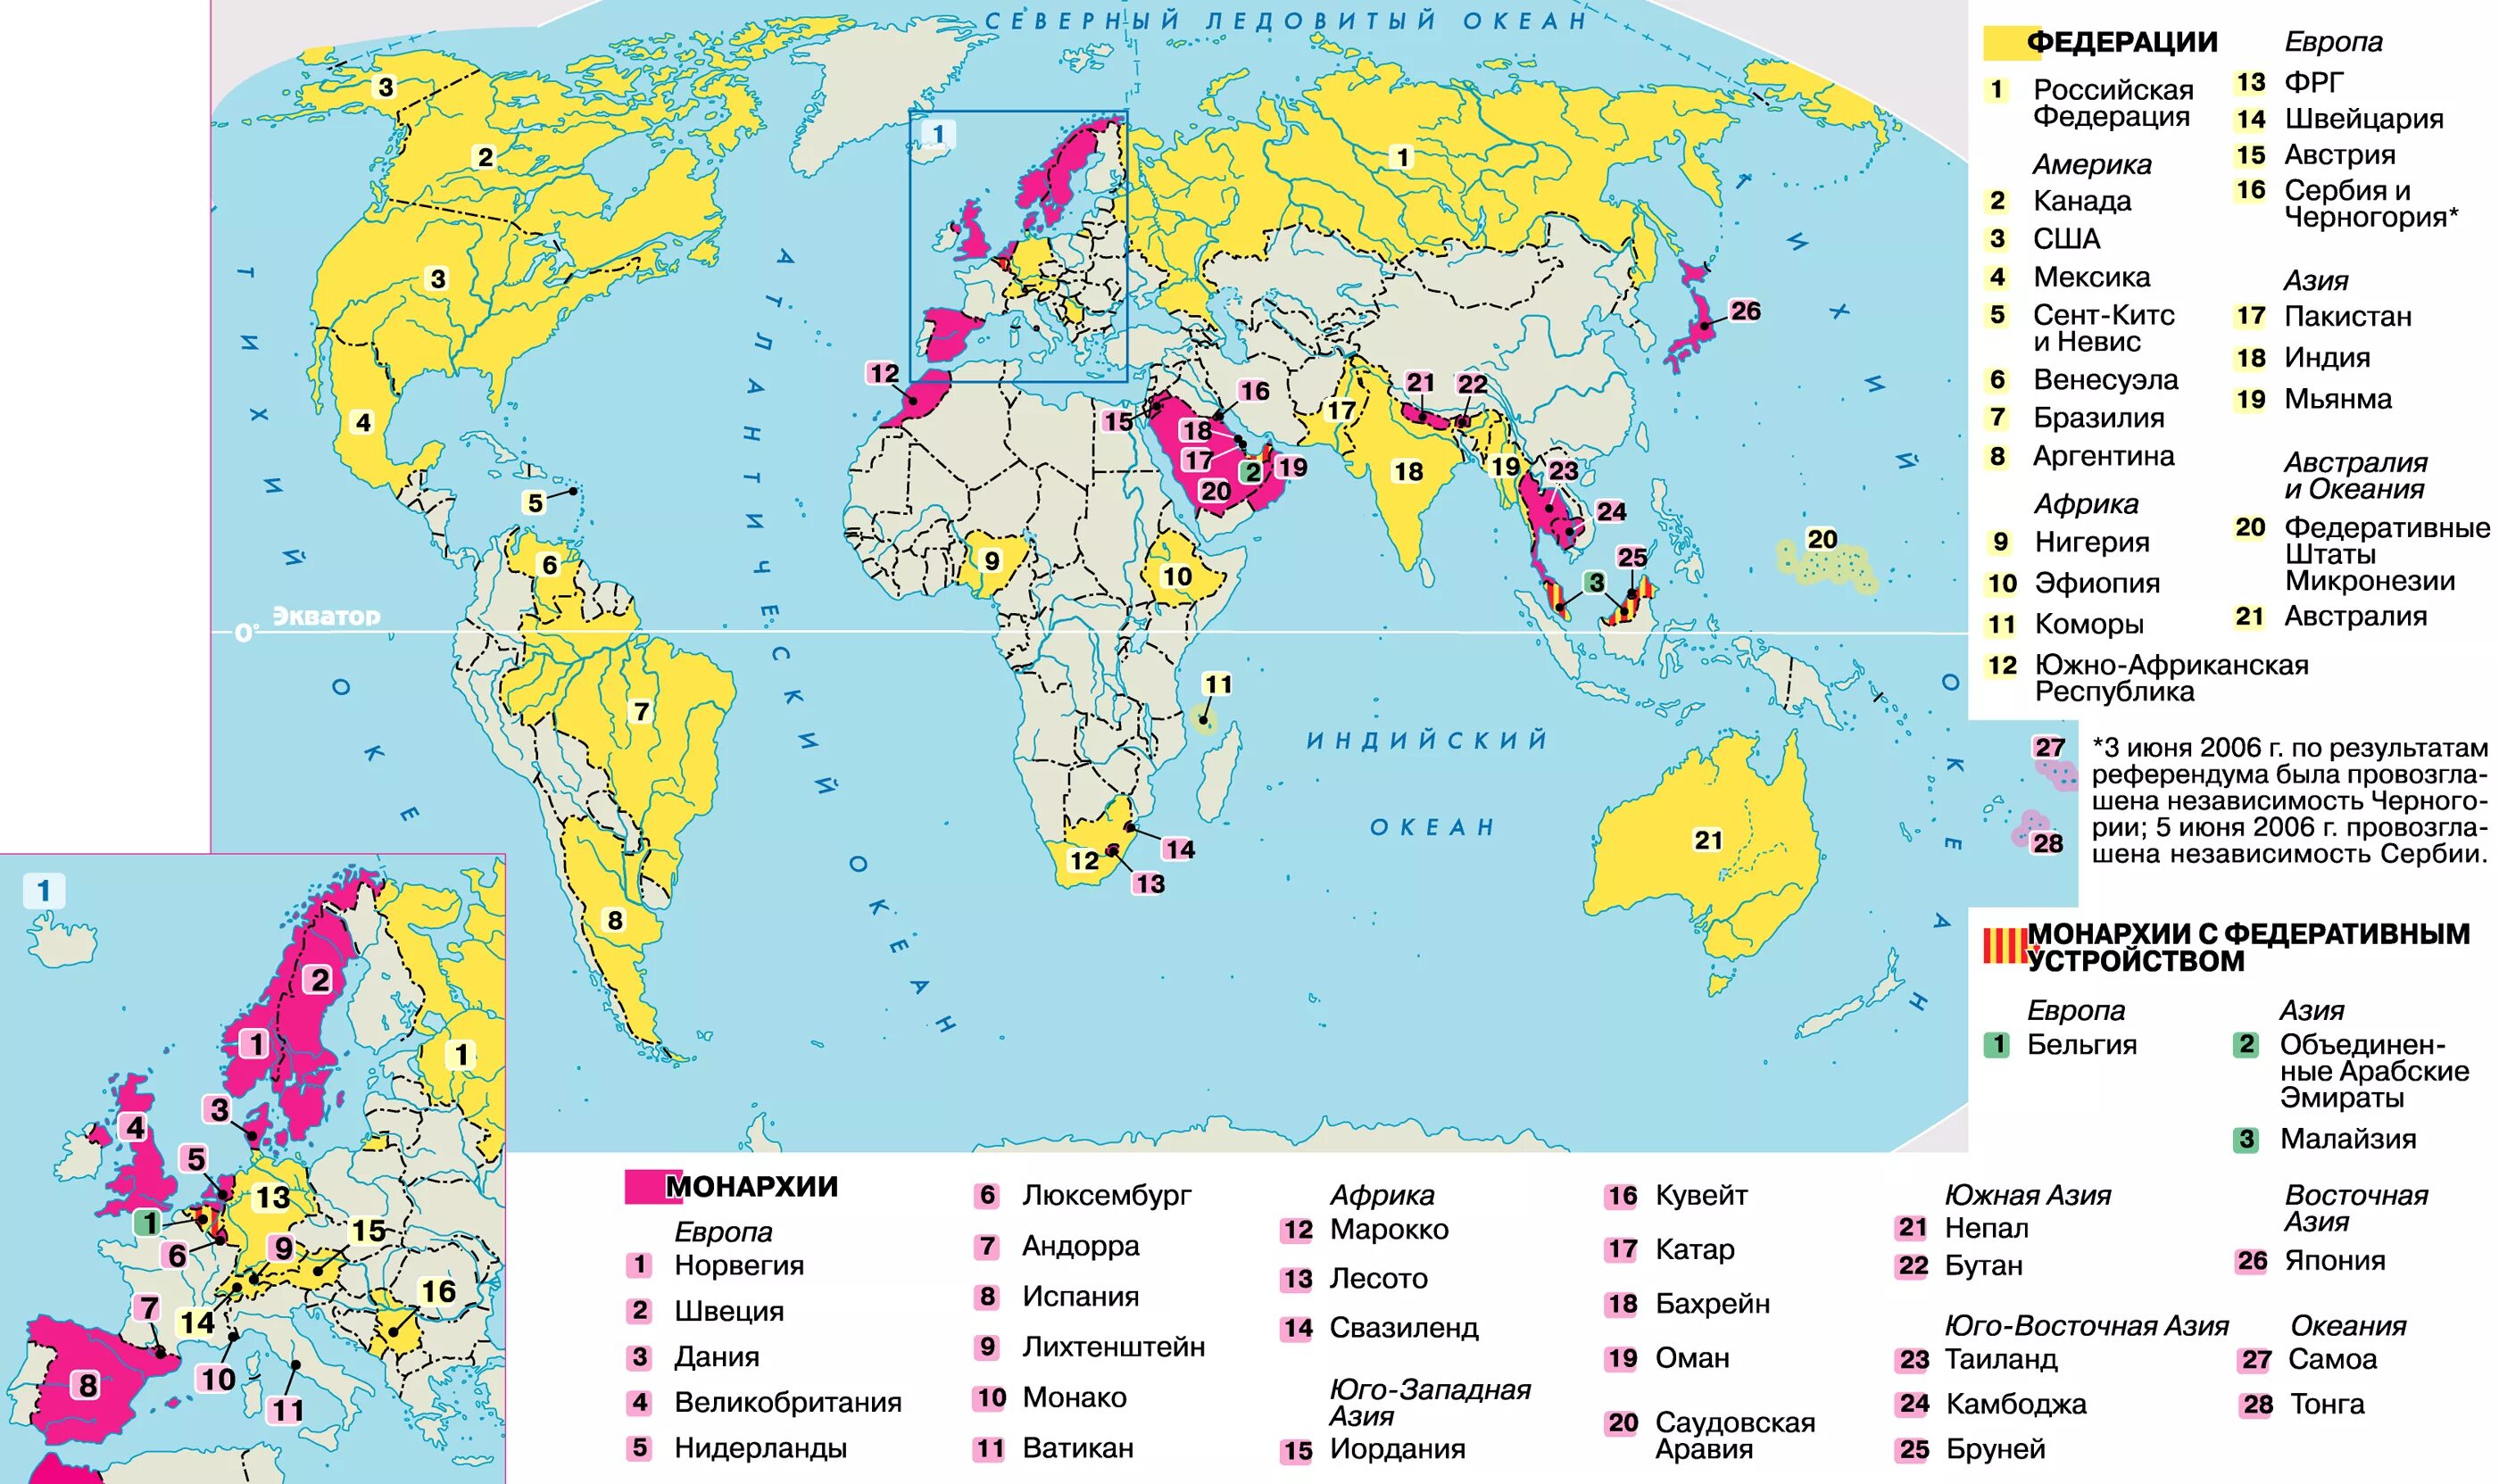 Страны азии по форме правления. Страны с монархической формой правления политическая карта. Страны с ыелеративной ыориоц правления.